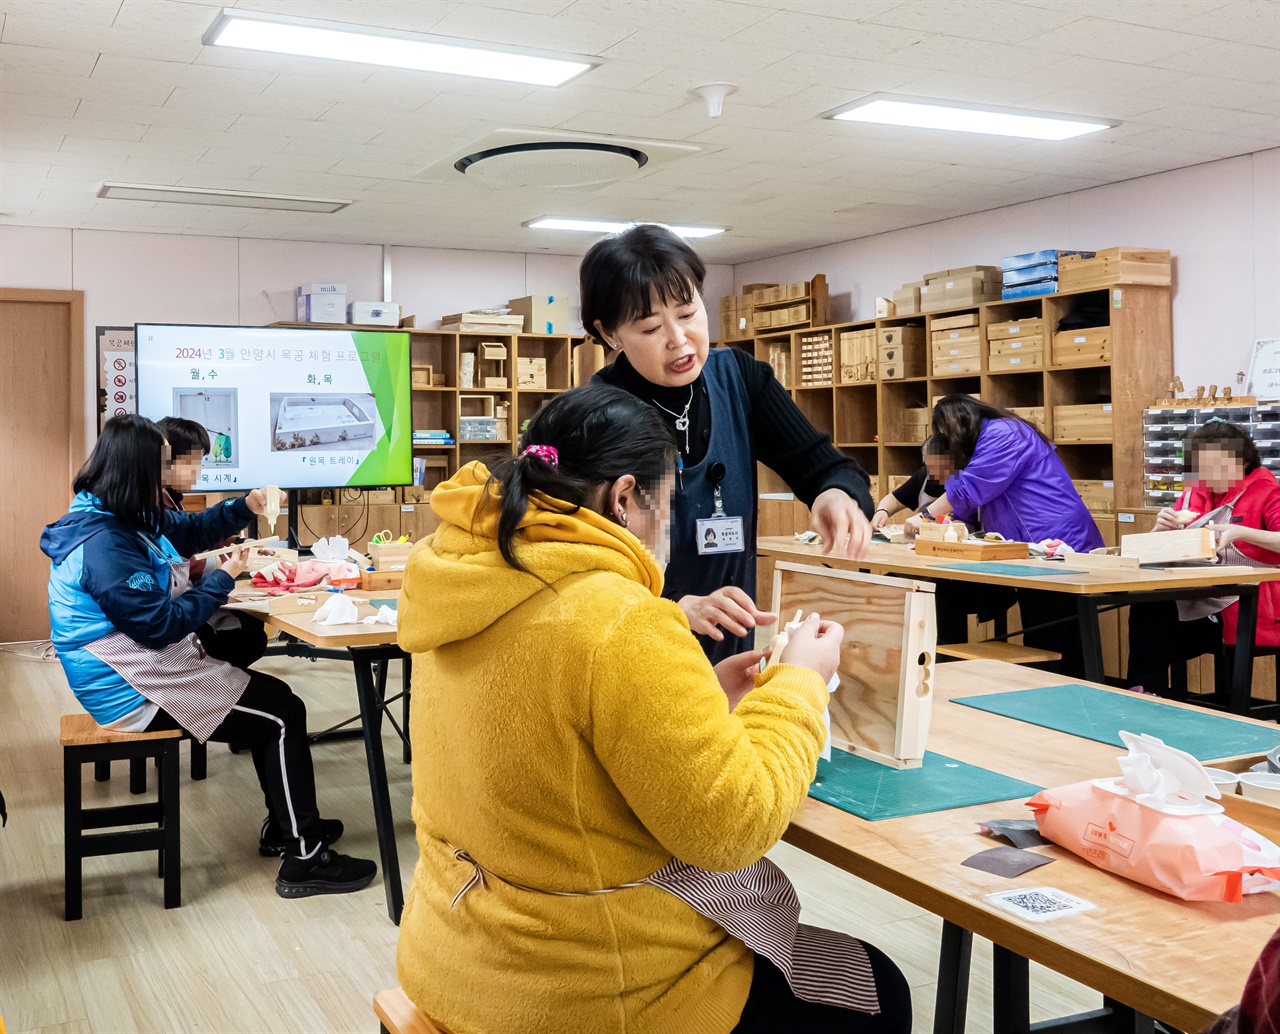 서울대 관악수목원 목공체험은 월요일부터 목요일까지 하루에 두 번 진행되고 원목 시계와 원목 트레이를 만들 수 있다. 관악수목원에서는 산림치유 프로그램도 함께 운영 중이다.  